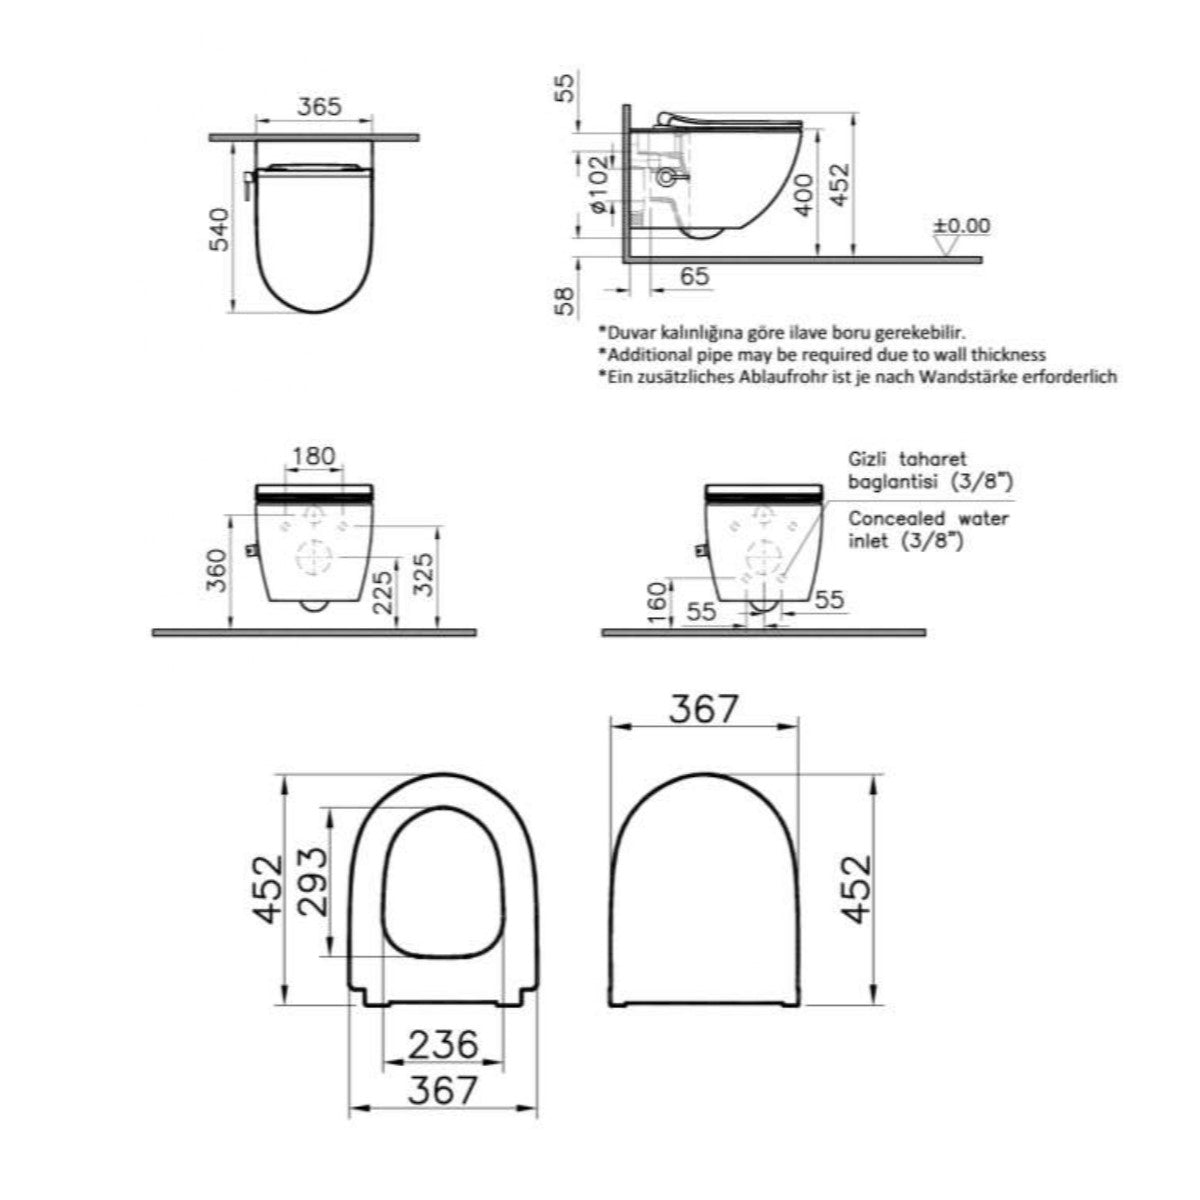 SATINF011RREXPBFCT SAT Infinitio WC školjka s funkcijo bide termostat in WC desko s počasnim zapiranjem